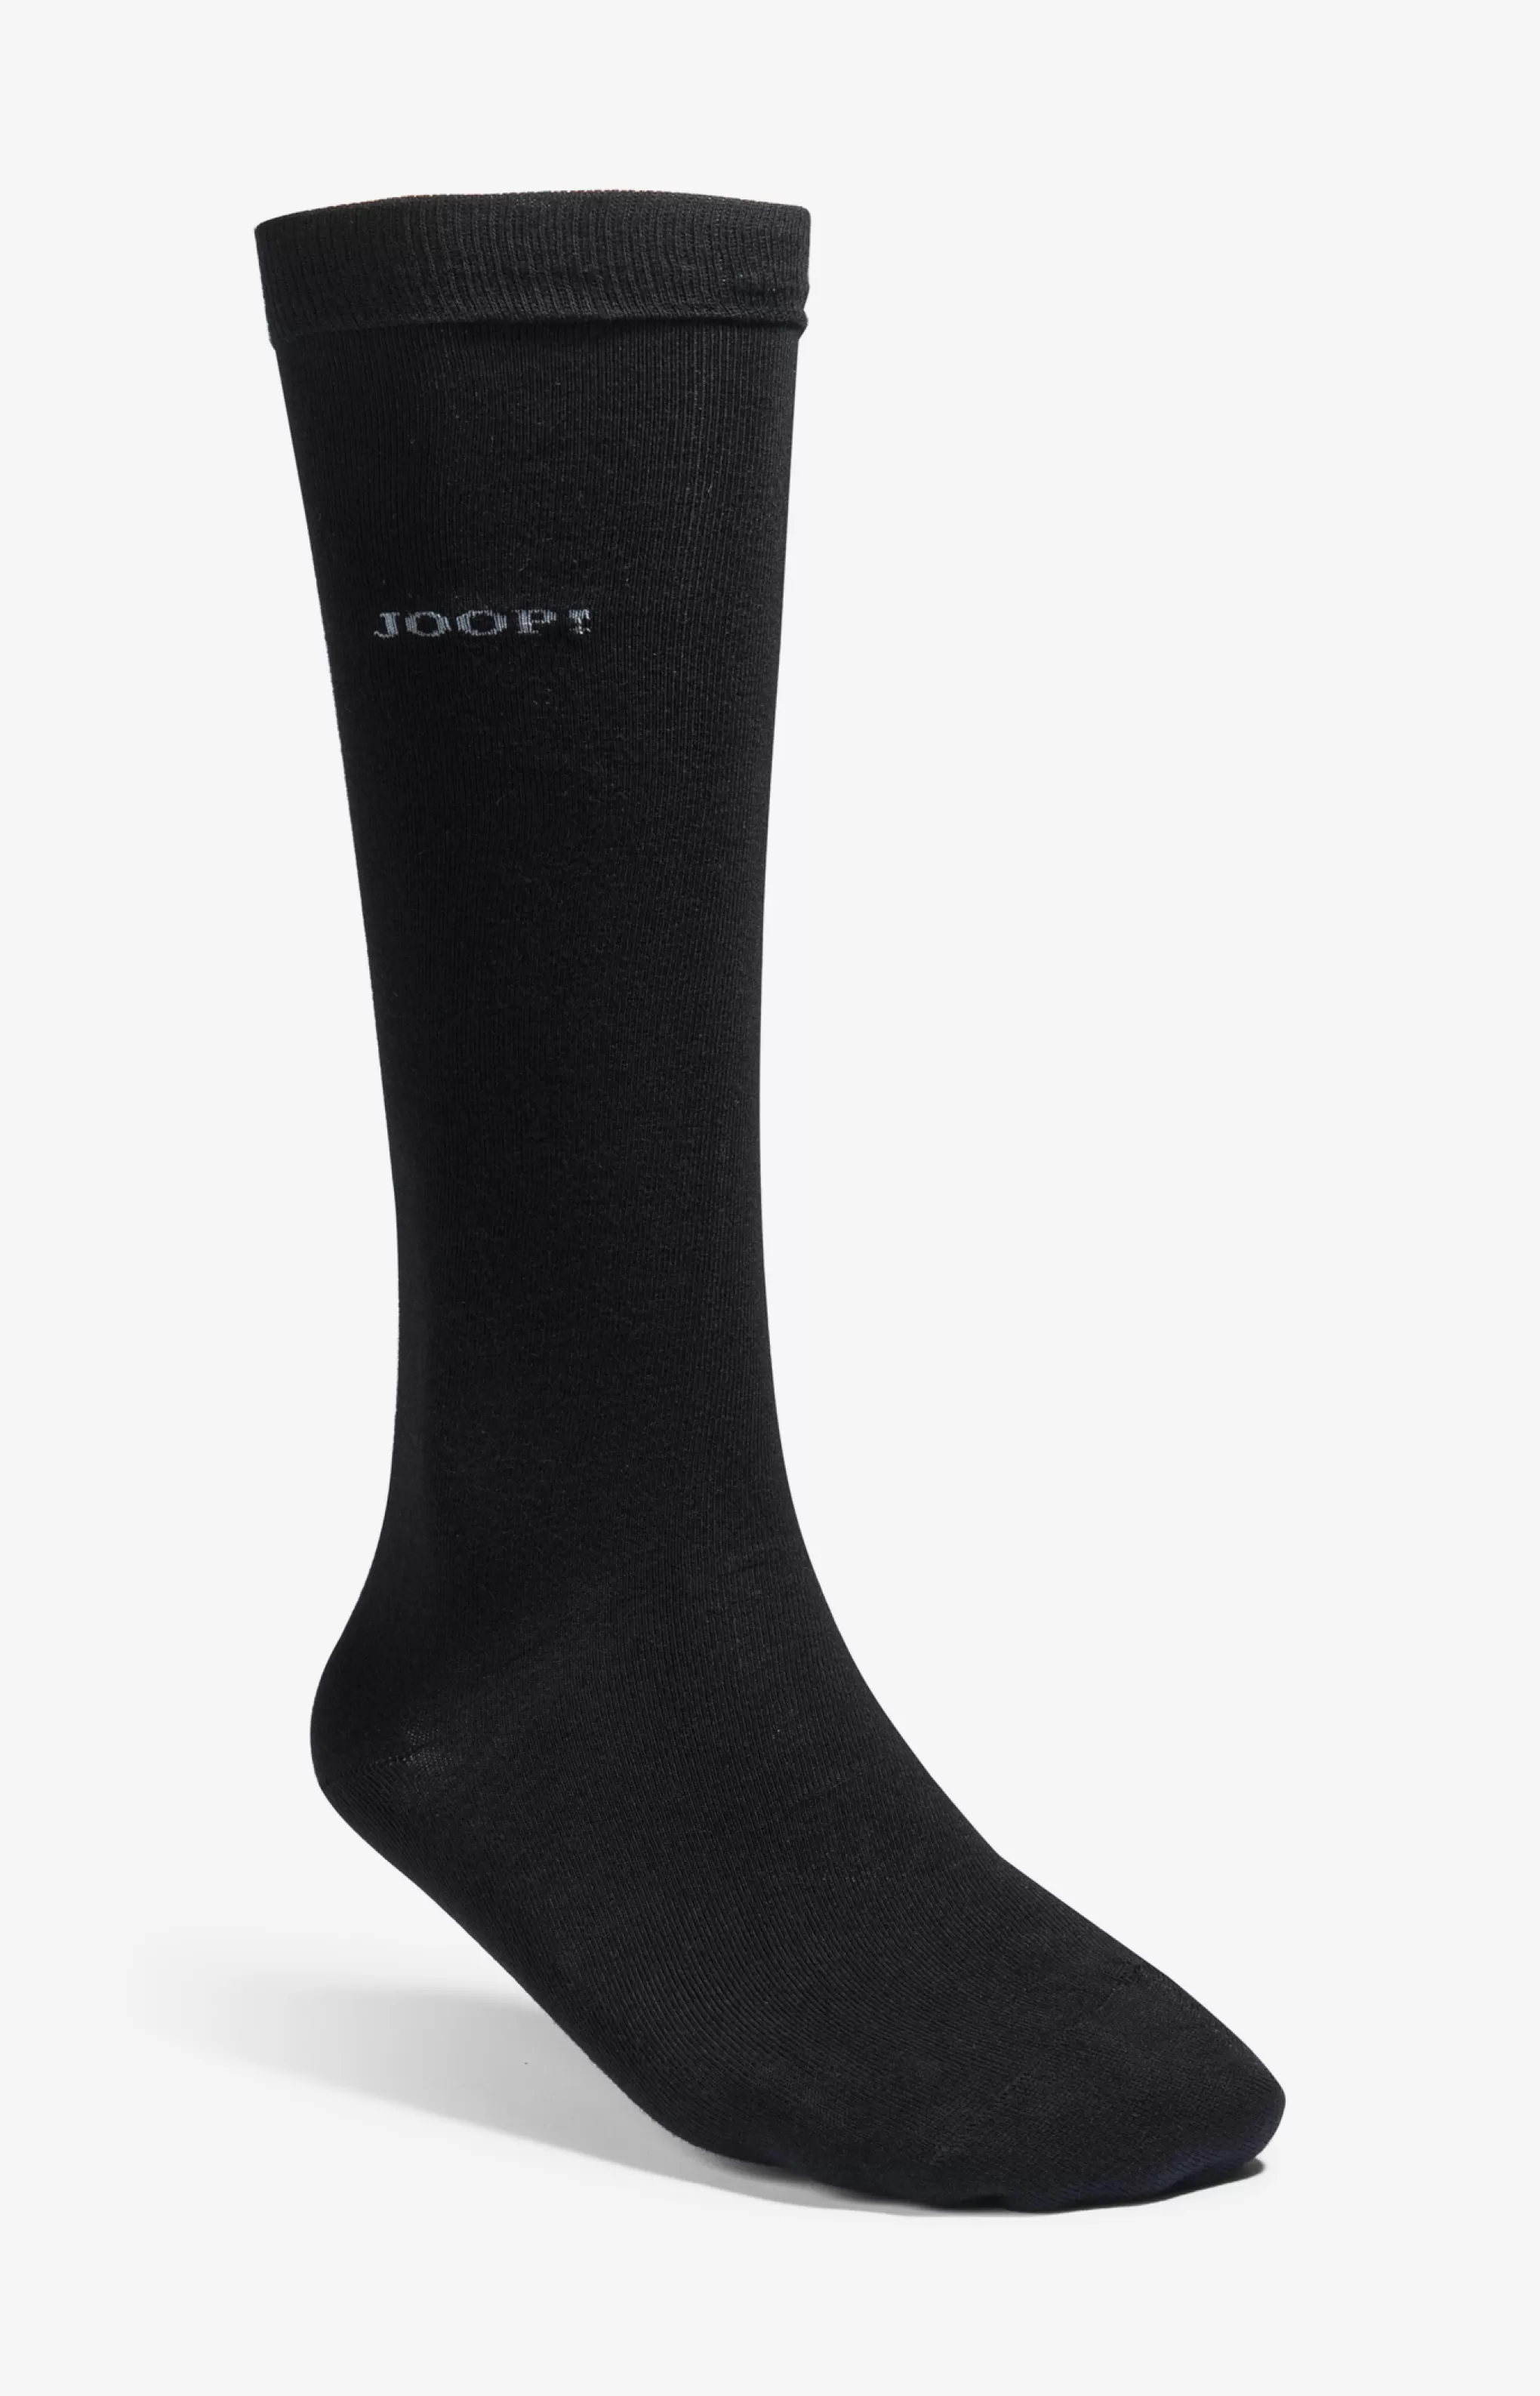 Socks*JOOP Socks Basic Soft Cotton Knee-high Socks in